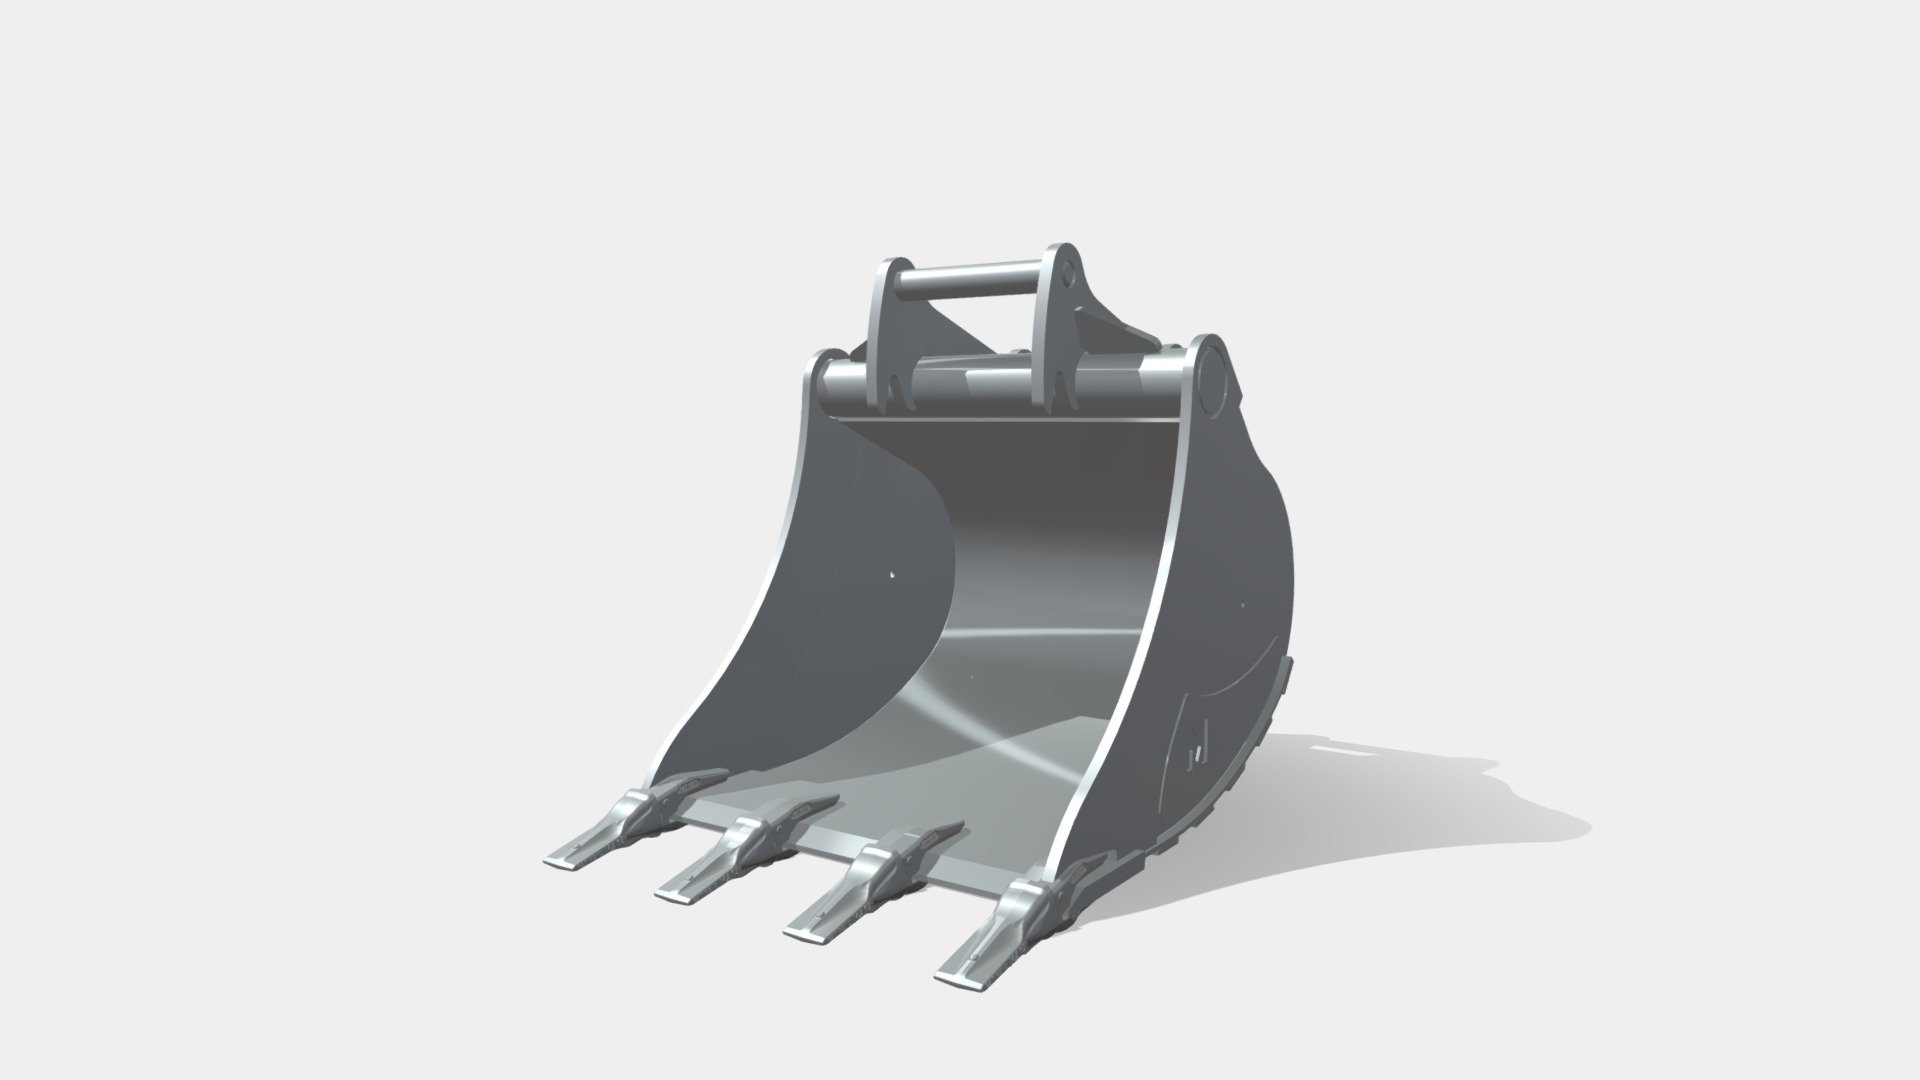 Pour excavatrices 9,2 - 22,5 T - Godet de terrassement profil standard MAGSI - 3D model by MAGSI 3d model